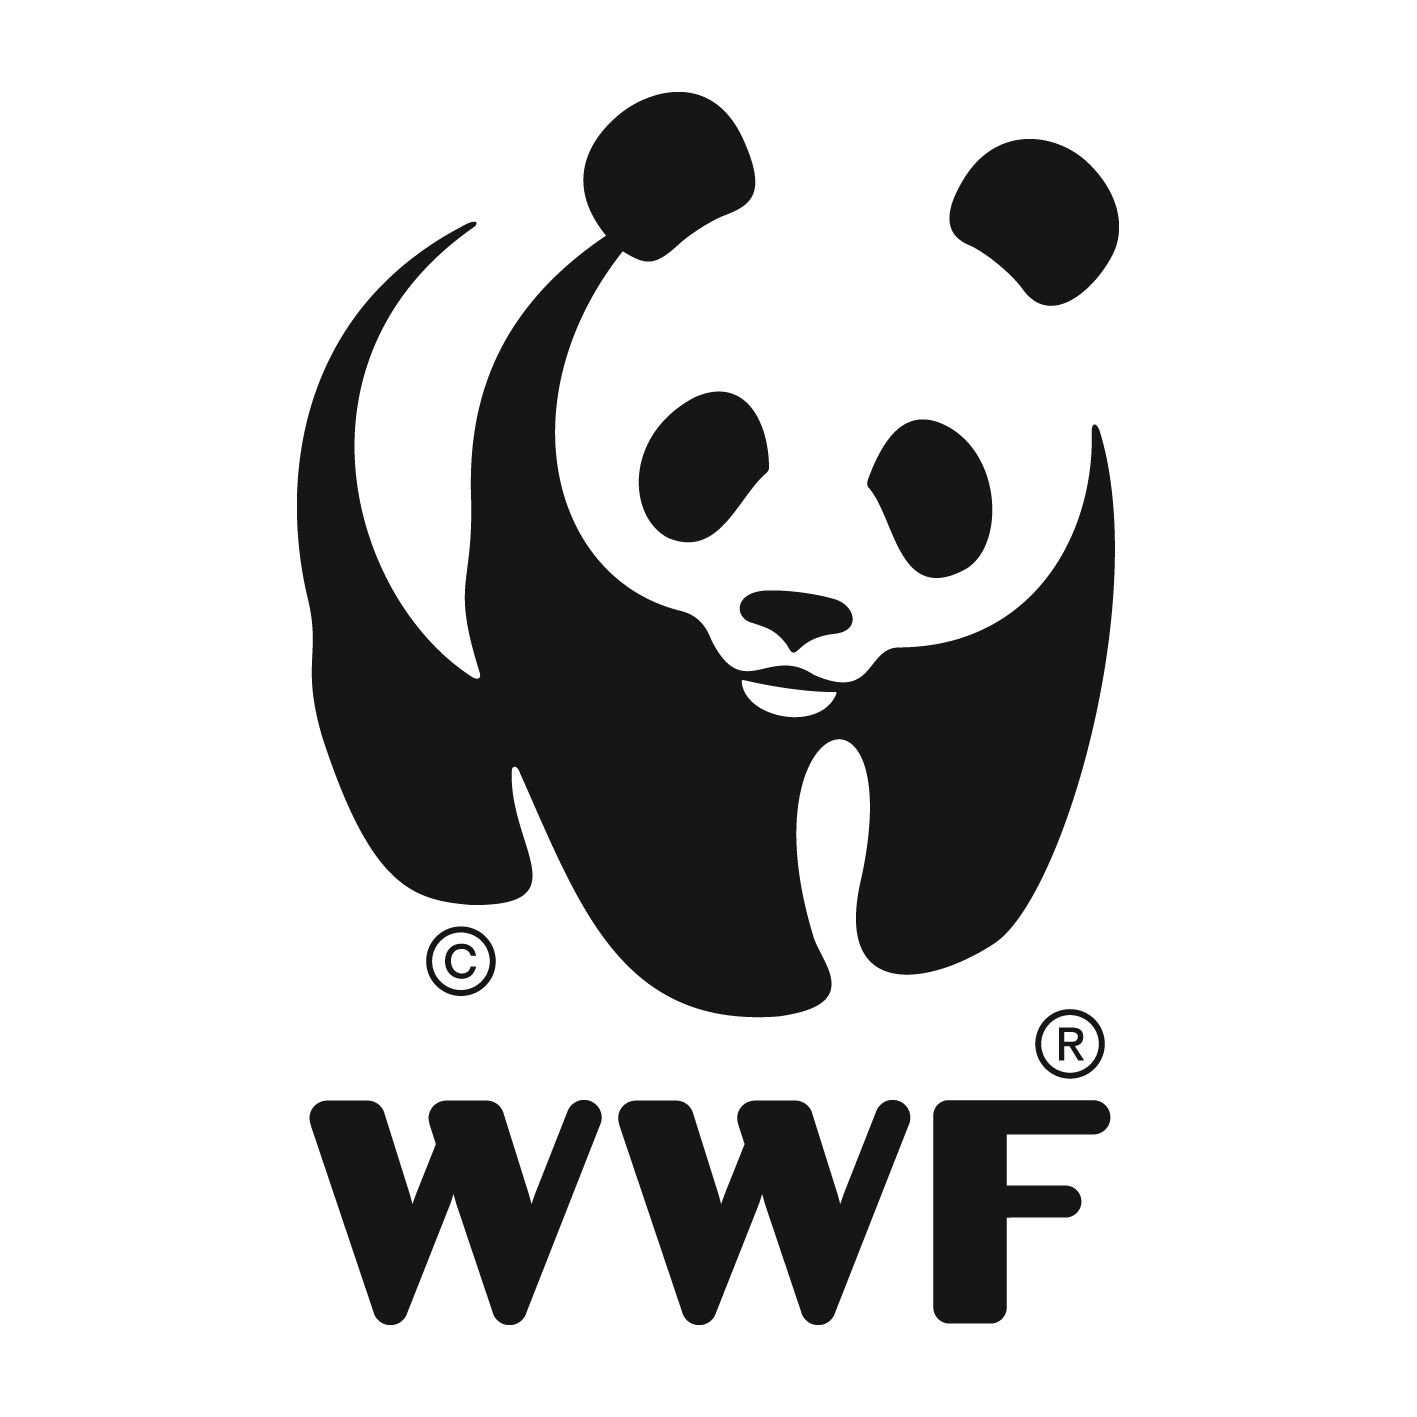 Il 2 febbraio è il World Wetlands Day WWF: SOLO NEGLI ULTIMI 50 ANNI NEL MONDO PERSO IL 35% DELLE ZONE UMIDE